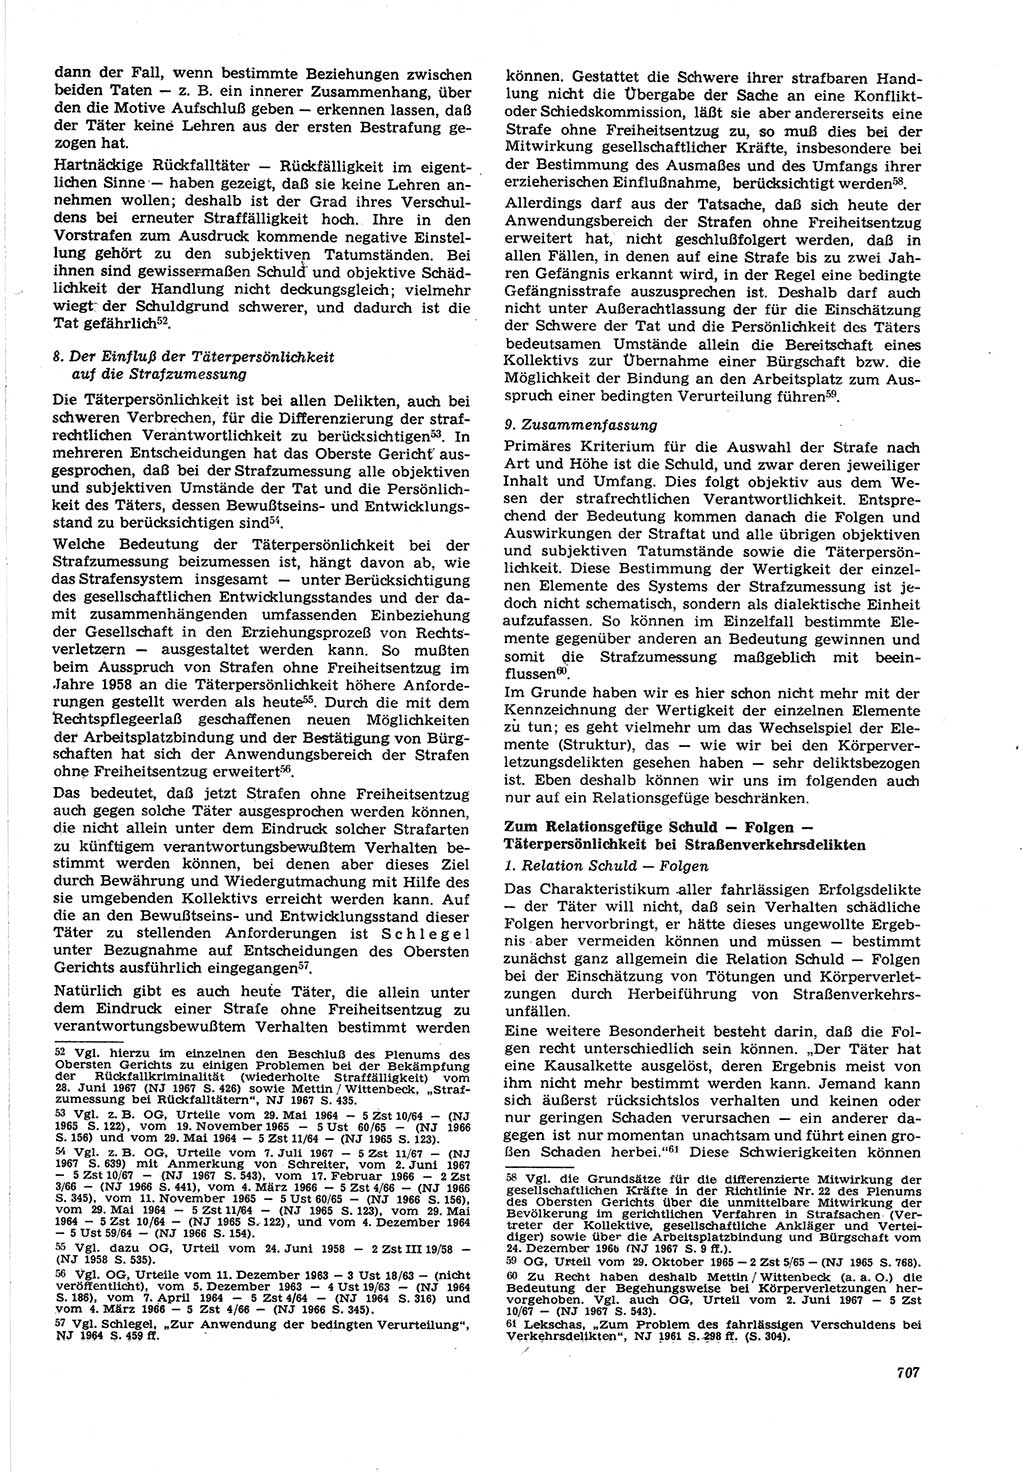 Neue Justiz (NJ), Zeitschrift für Recht und Rechtswissenschaft [Deutsche Demokratische Republik (DDR)], 21. Jahrgang 1967, Seite 707 (NJ DDR 1967, S. 707)